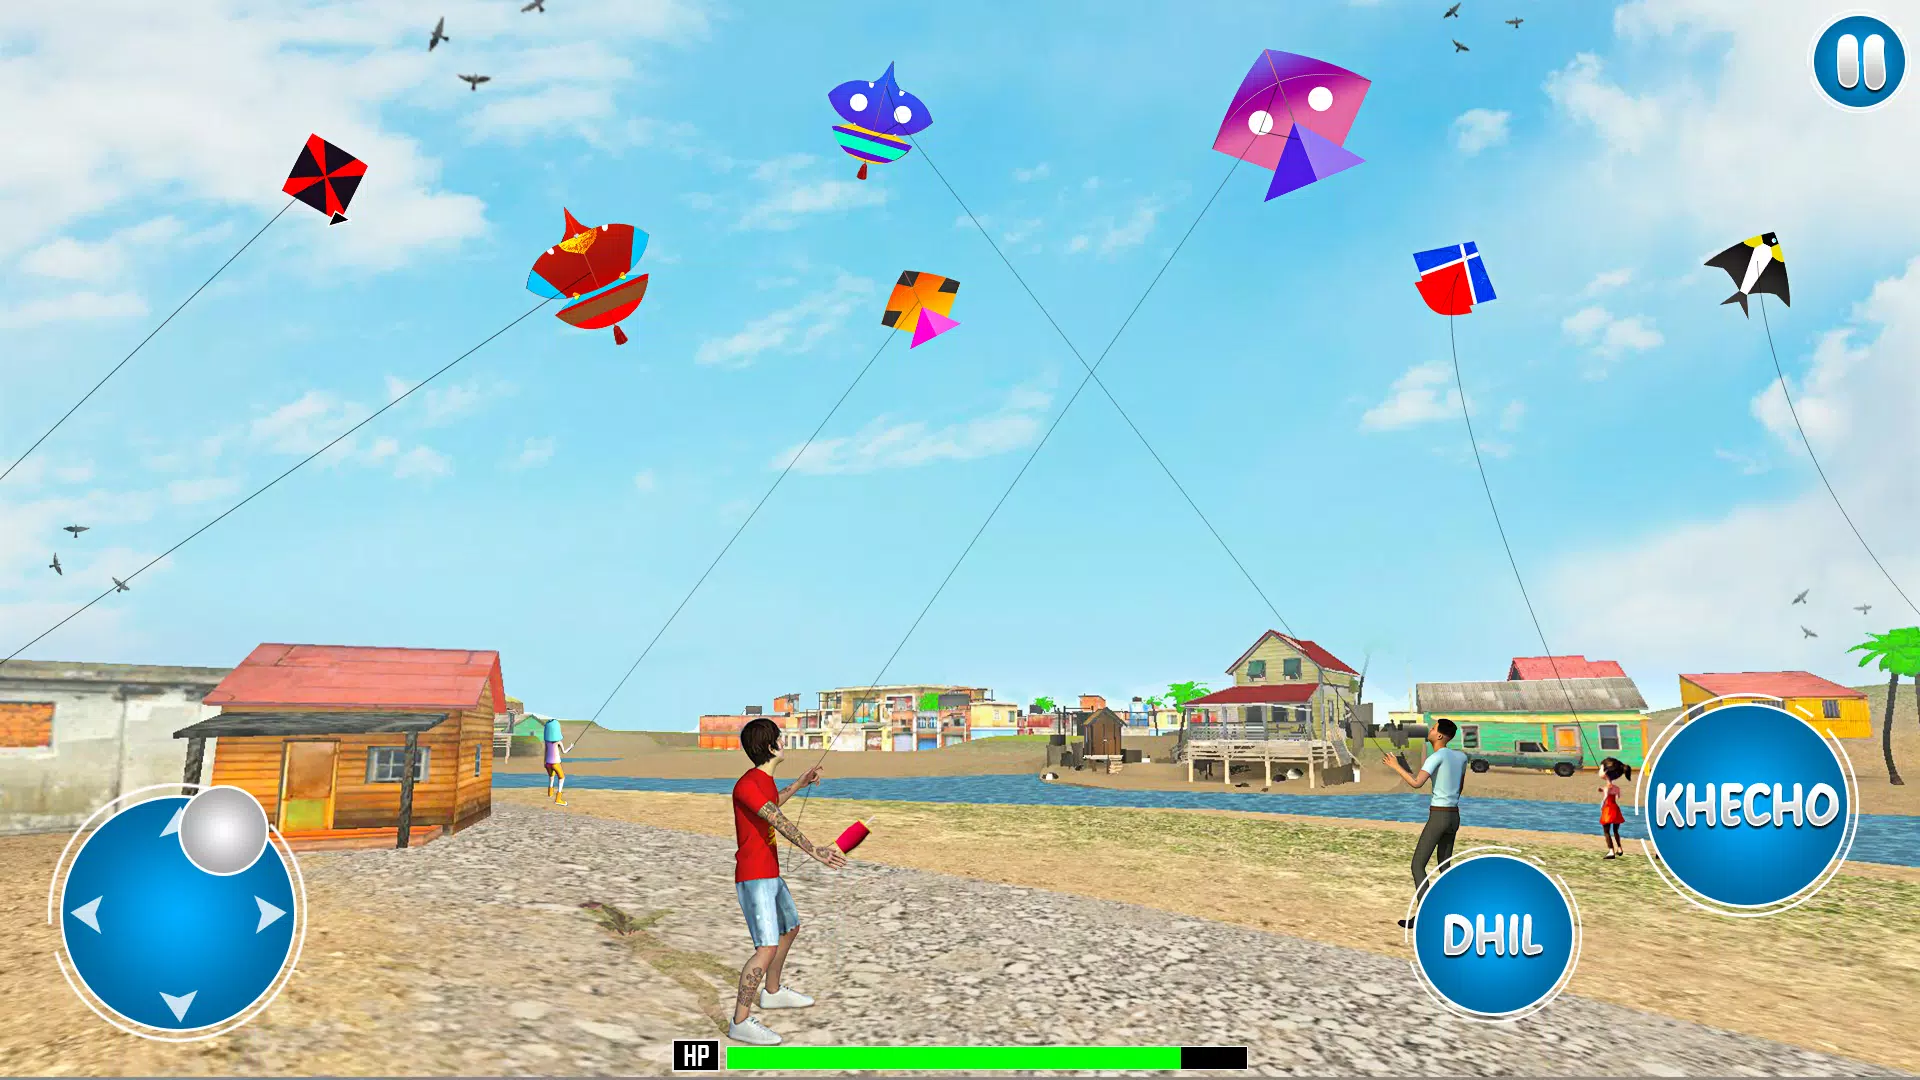 Jogo Pipa Combate no Jogos 360